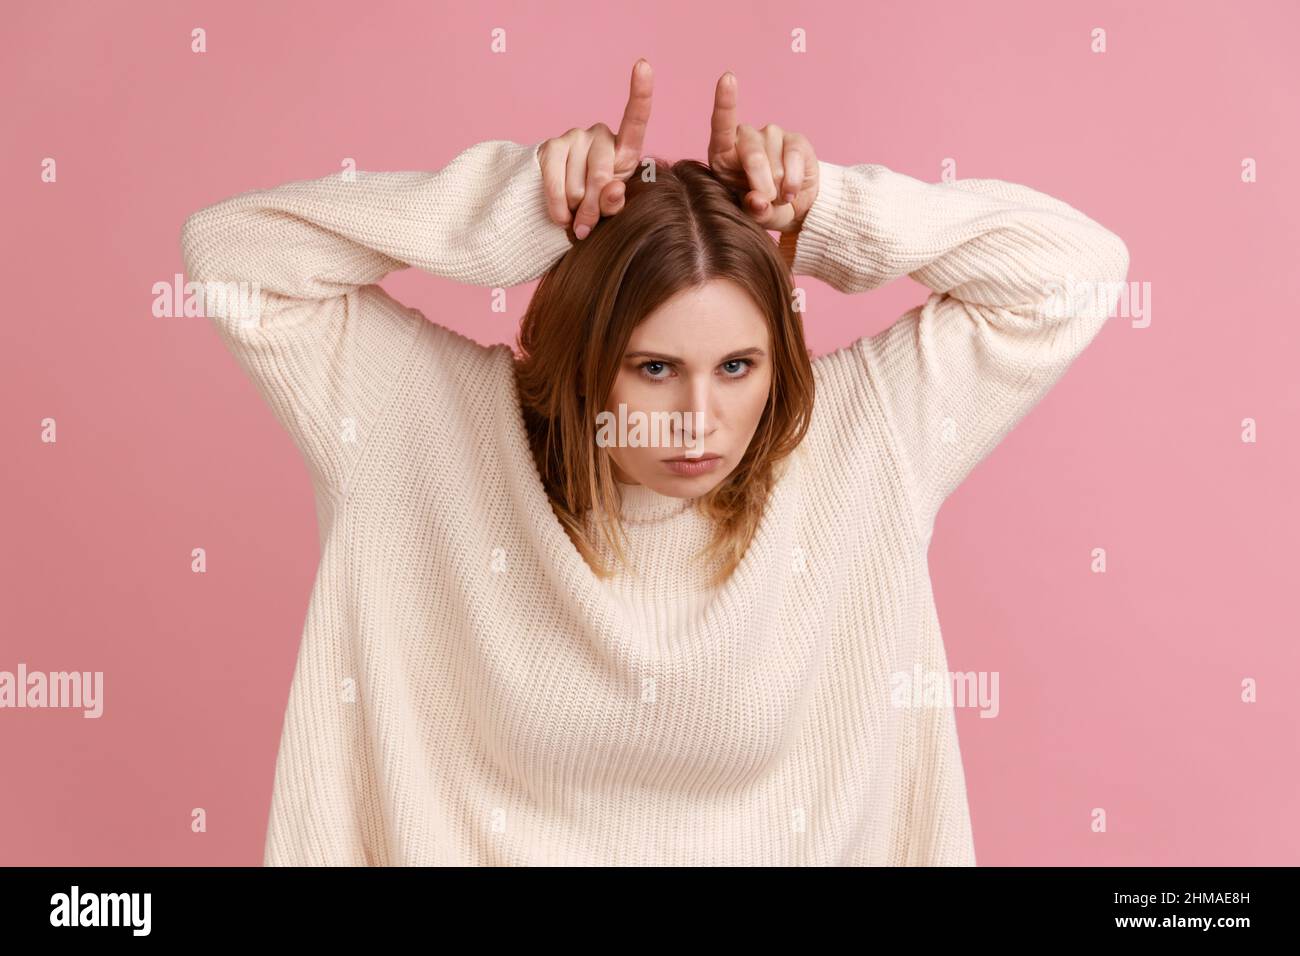 Portrait d'une femme blonde agressive faisant des cornes de taureau se geste sur sa tête et frognant visage, exprimant la menace de colère, portant un chandail blanc. Studio d'intérieur isolé sur fond rose. Banque D'Images